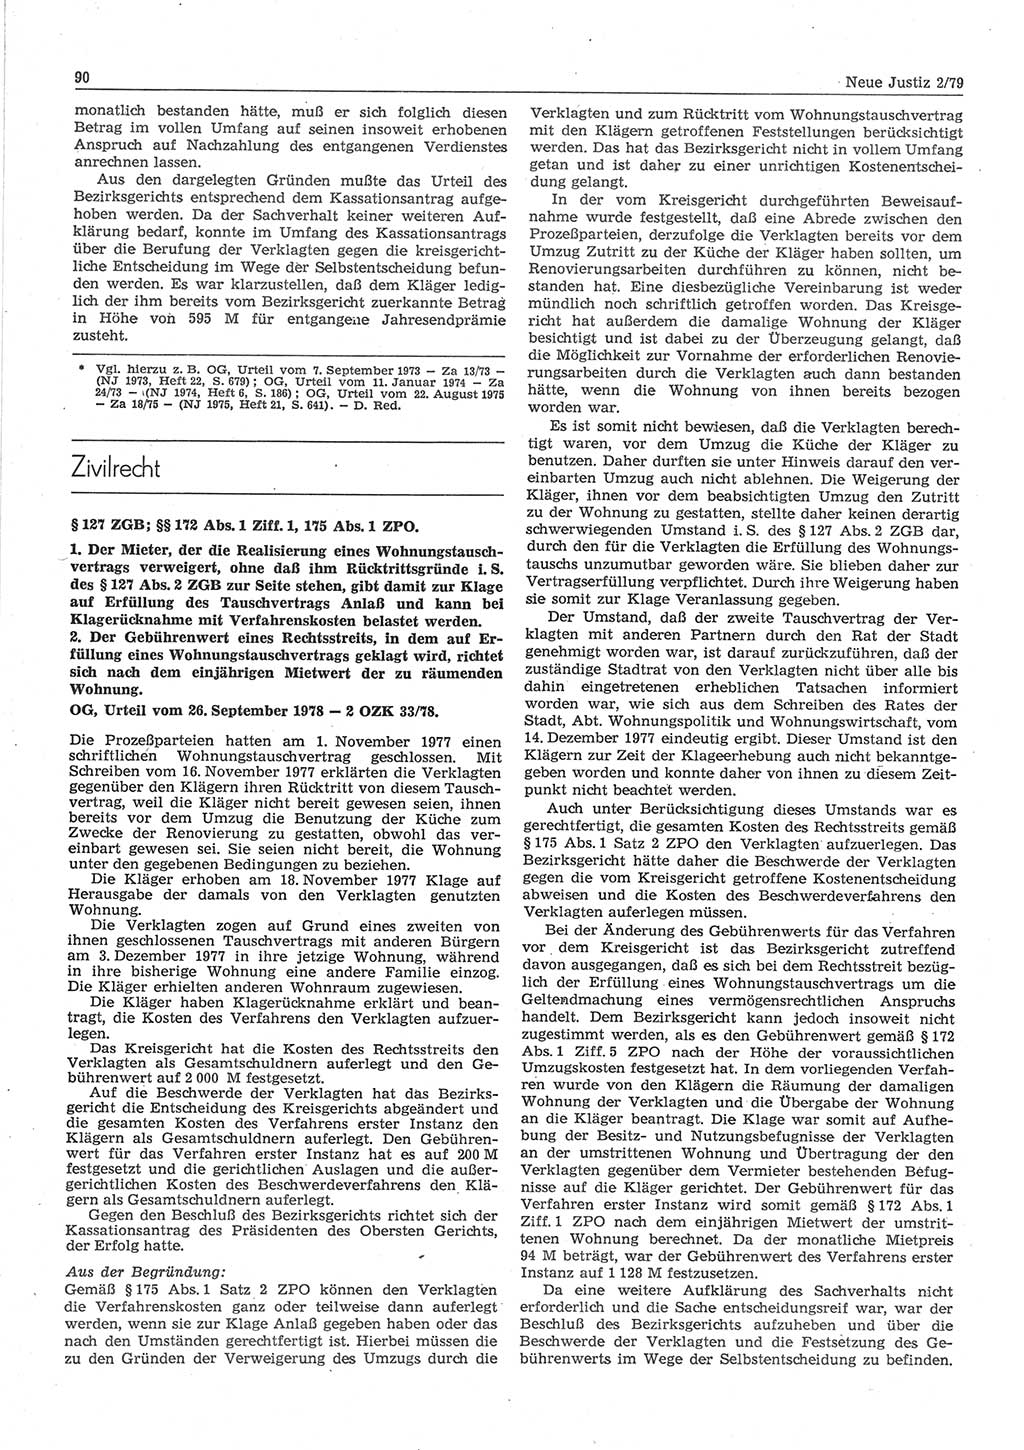 Neue Justiz (NJ), Zeitschrift für sozialistisches Recht und Gesetzlichkeit [Deutsche Demokratische Republik (DDR)], 33. Jahrgang 1979, Seite 90 (NJ DDR 1979, S. 90)